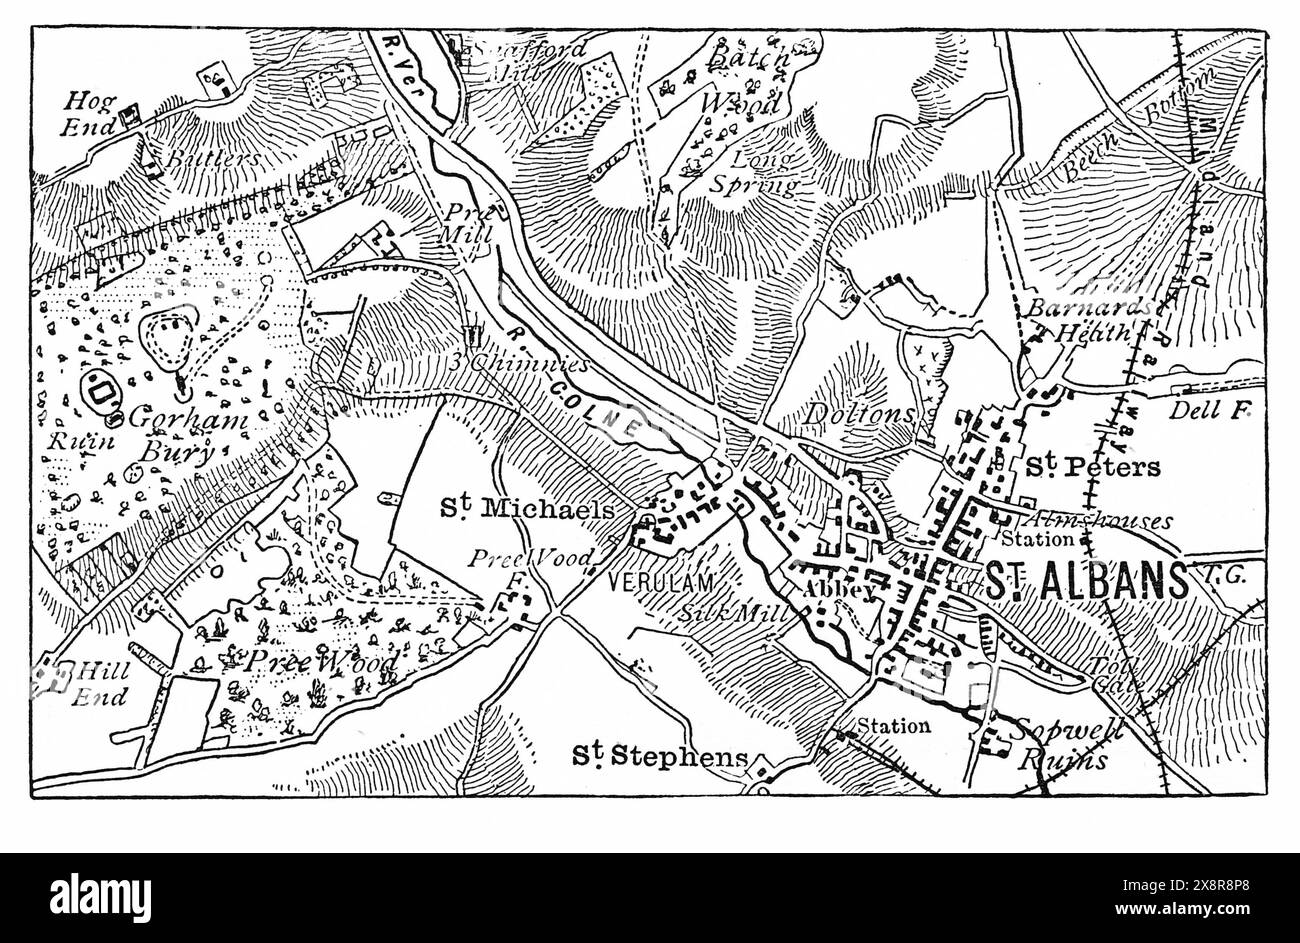 Mappa di St Albans, Hertfordshire; Inghilterra. Fine del XIX secolo. Illustrazione in bianco e nero da Our Own Country Vol III pubblicata da Cassell Foto Stock